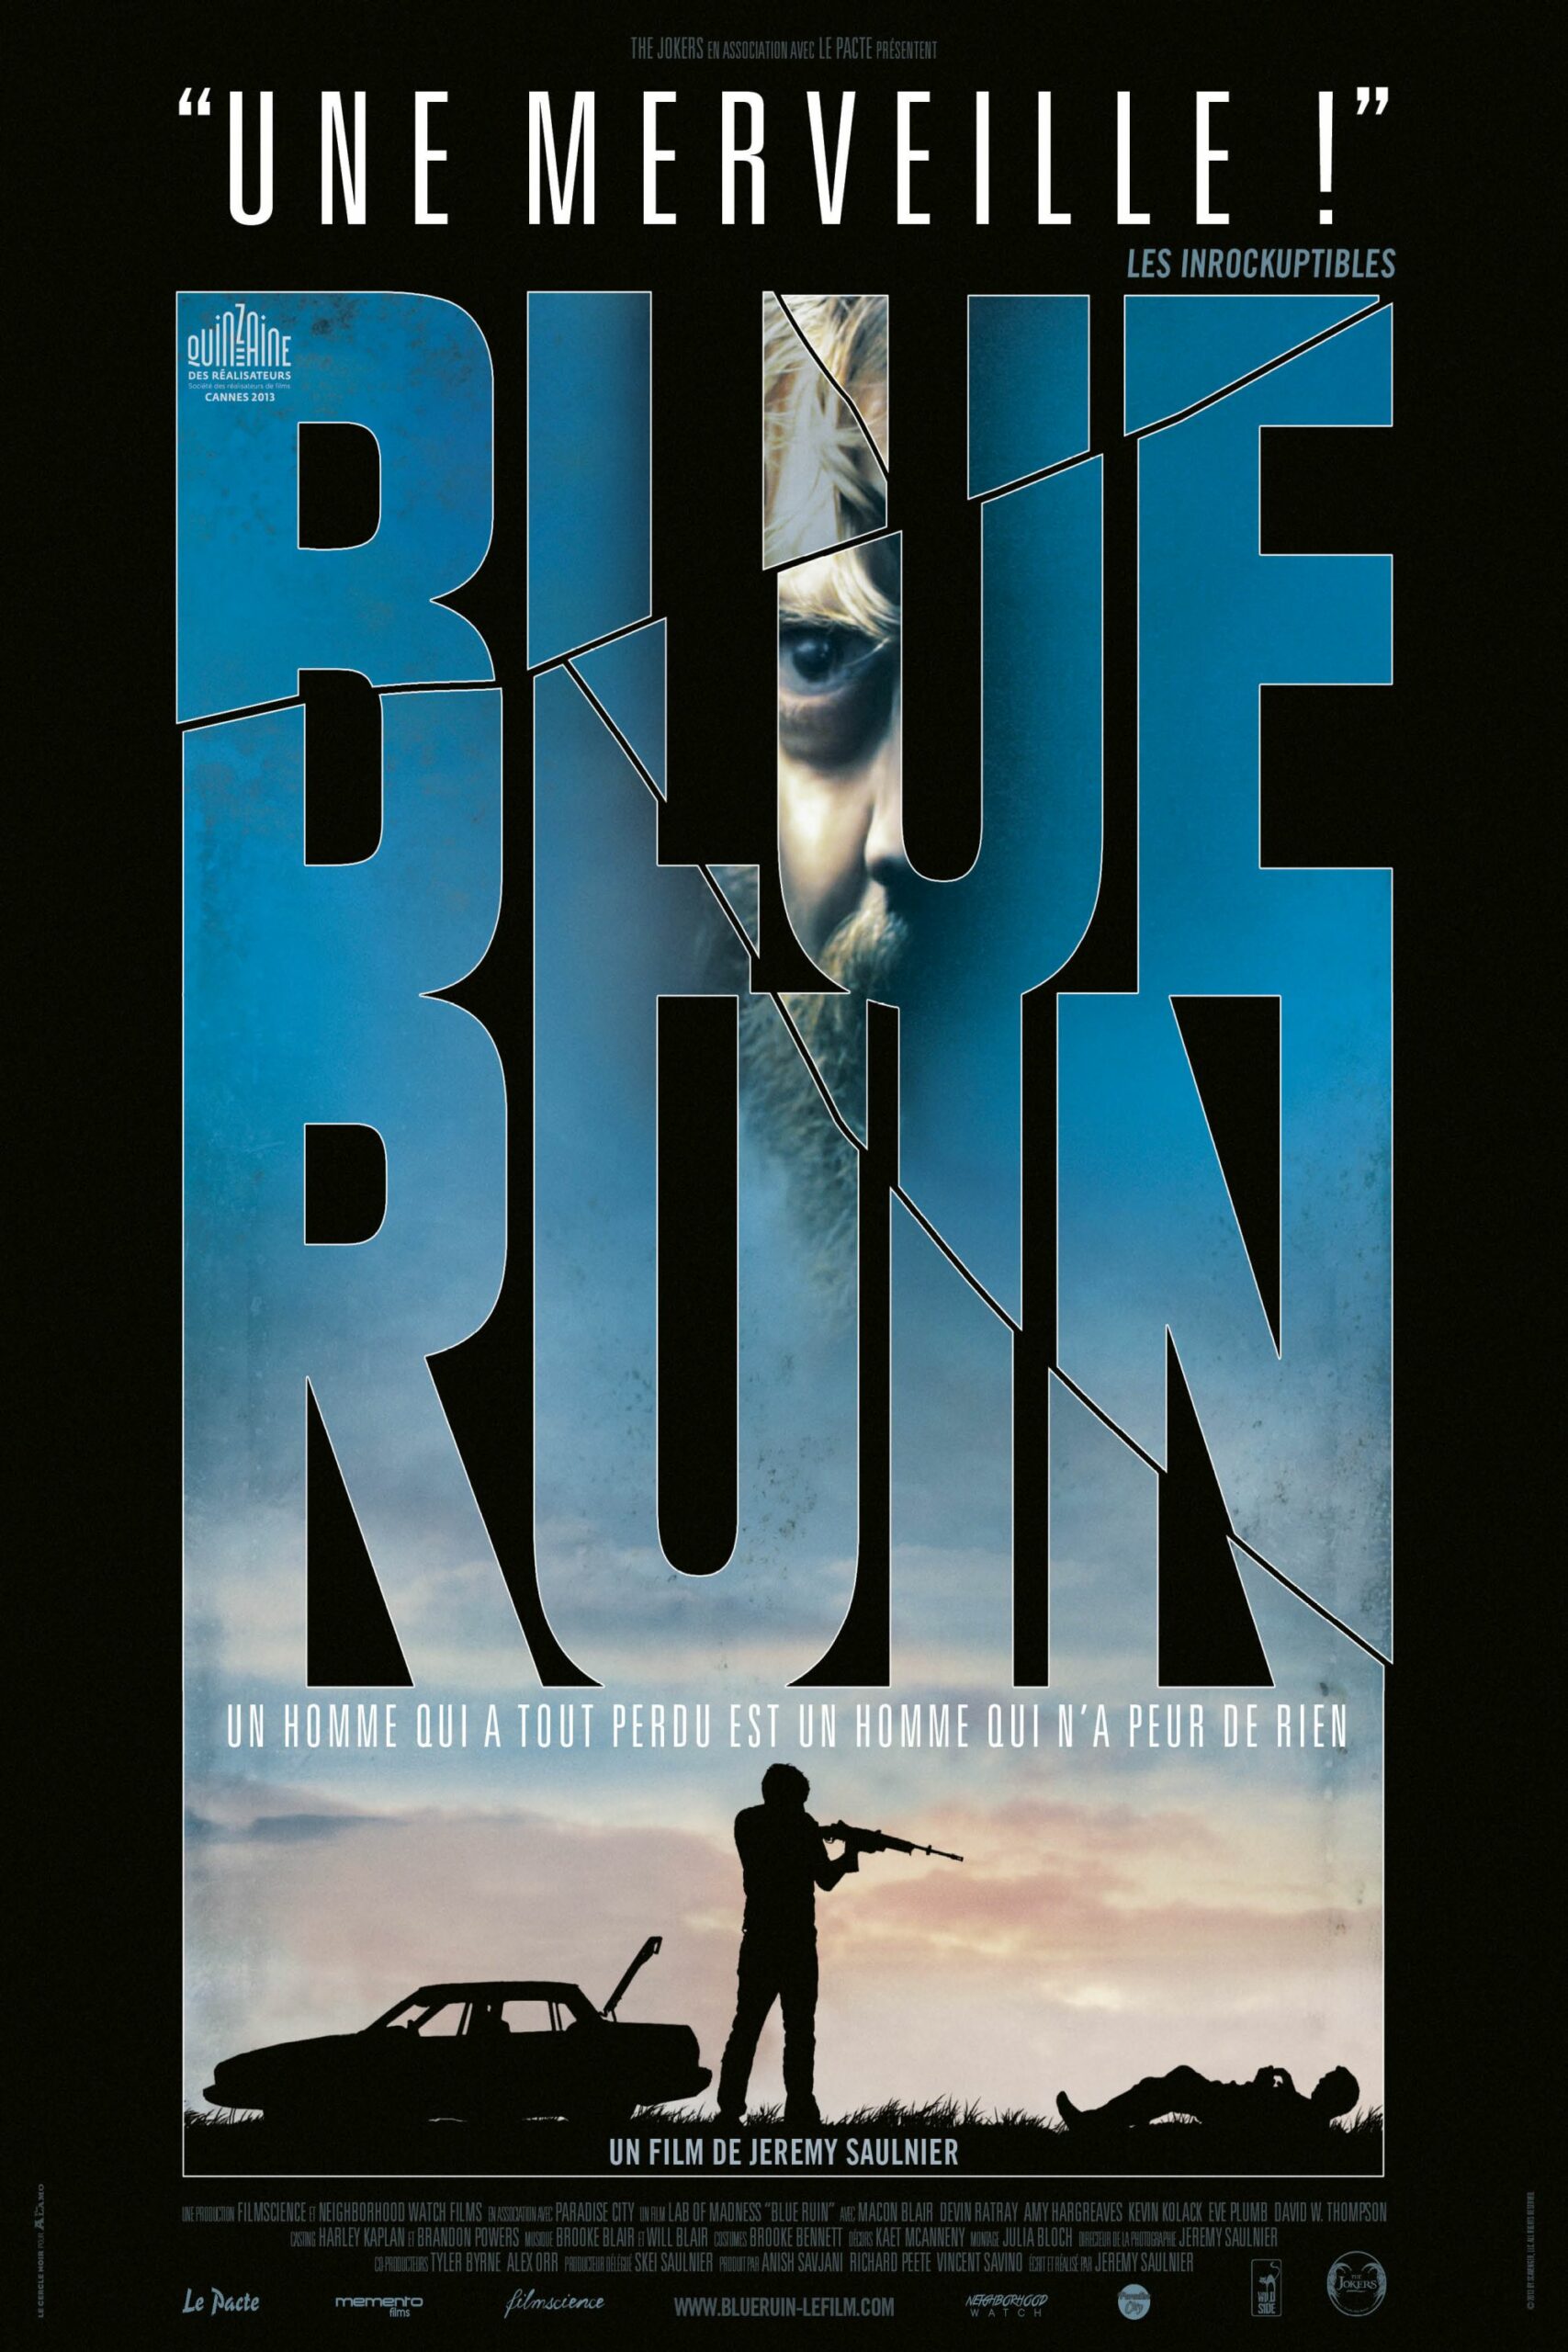 ดูหนังออนไลน์ฟรี Blue Ruin (2013) อเวจีสีคราม